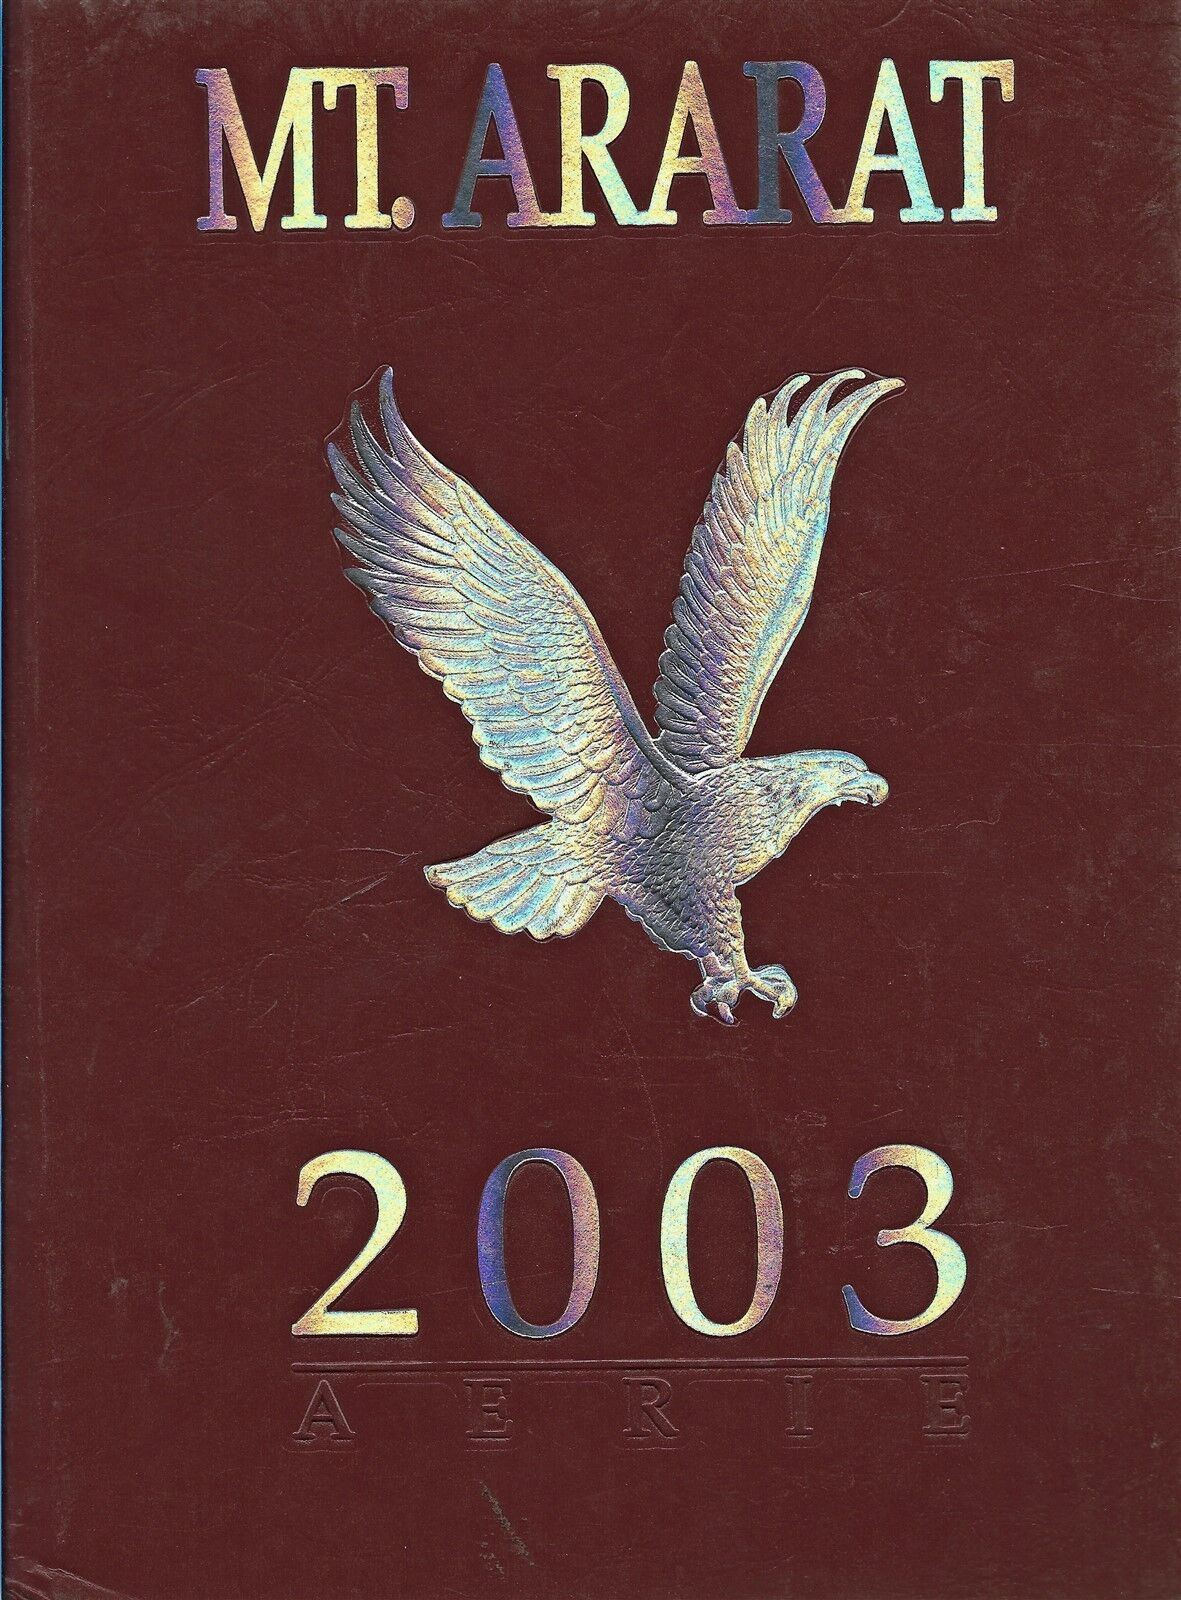 High School Yearbook Topsham Maine Mt Ararat High School Aerie 2003